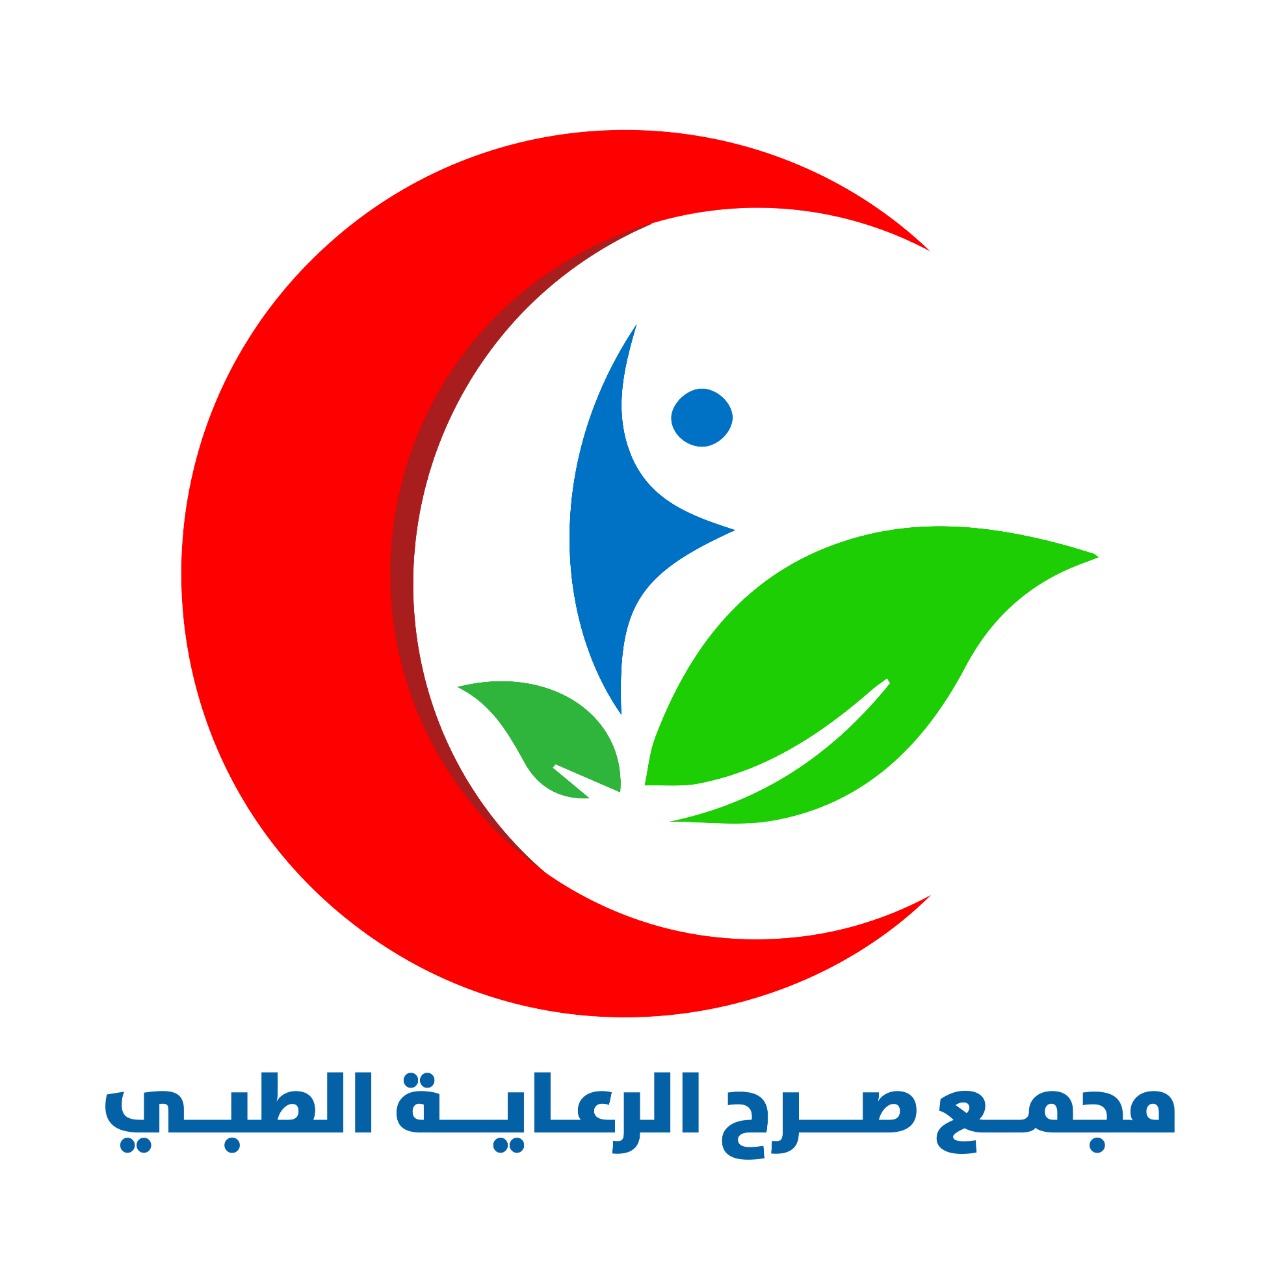 مجمع صرح الرعاية الطبي ( الرياض - حي العارض - طريق الملك عبدالعزيز )